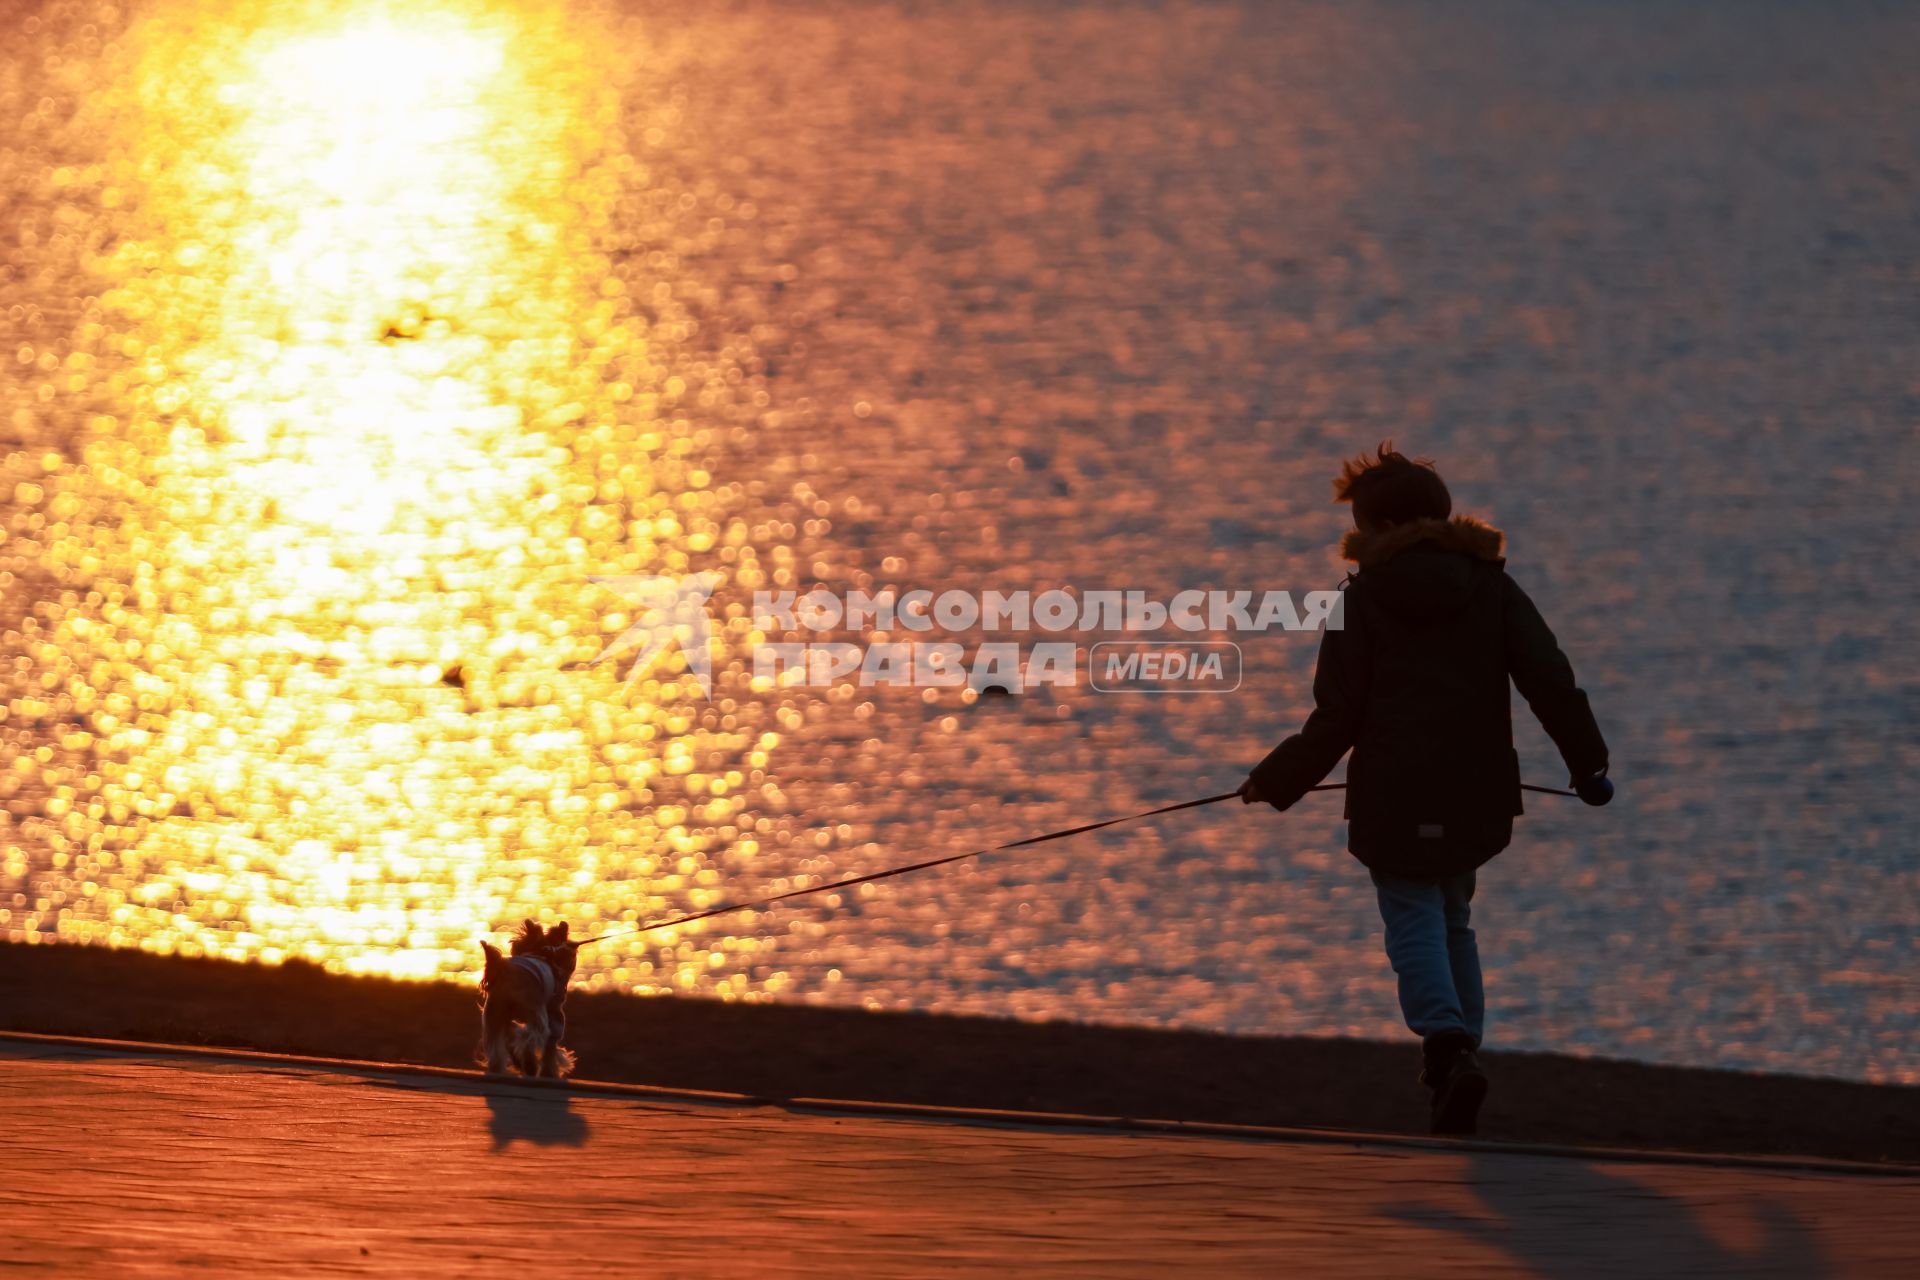 Красноярск. Девушка гуляет с собакой на набережной во время заката.